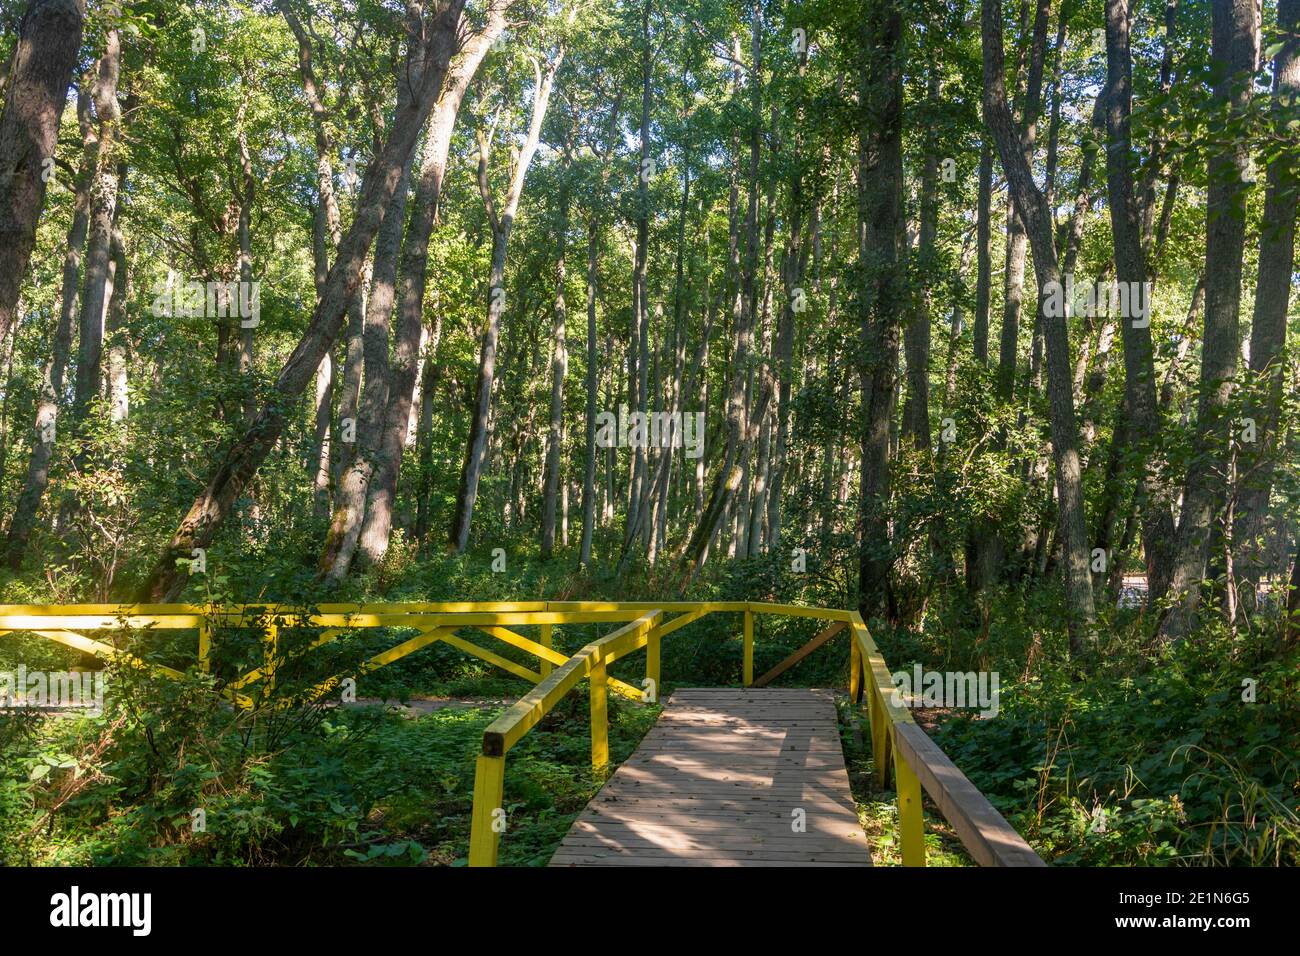 Sentiers de randonnée en bois avec mains courantes dans les bois parmi les arbres. Concept d'Eclogy, protection de la forêt. Mise au point sélective. Banque D'Images